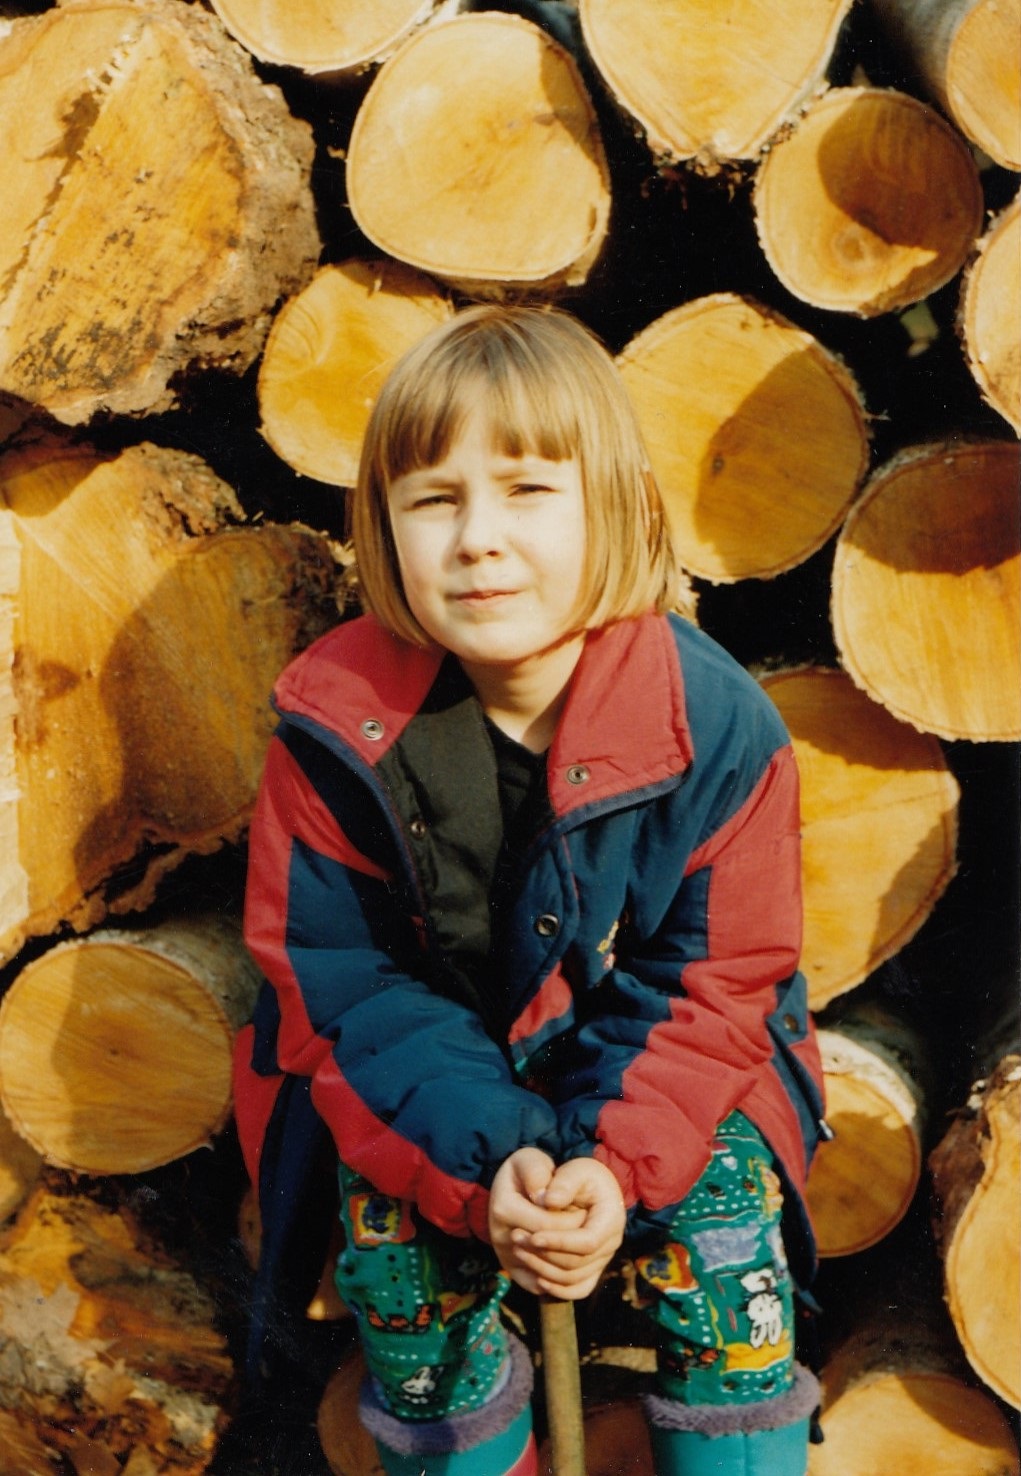 Wycinka drzewa na opał - zbliżają się wieki ciemne dla naszej familii, 1999 